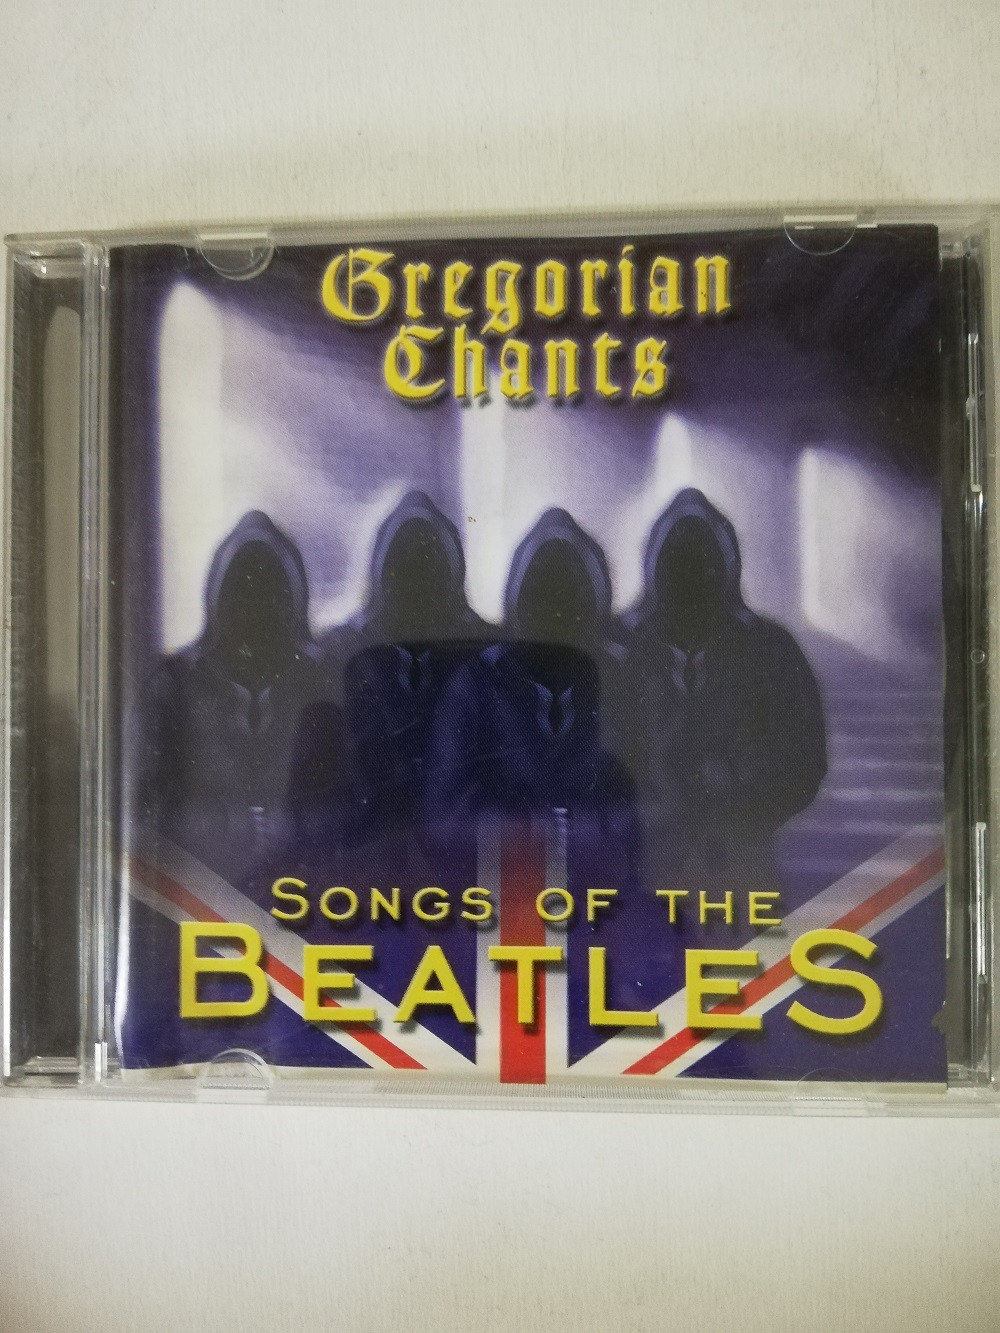 Imagen CD GREGORIAN CHANTS - SONGS OF THE BEATLES 1